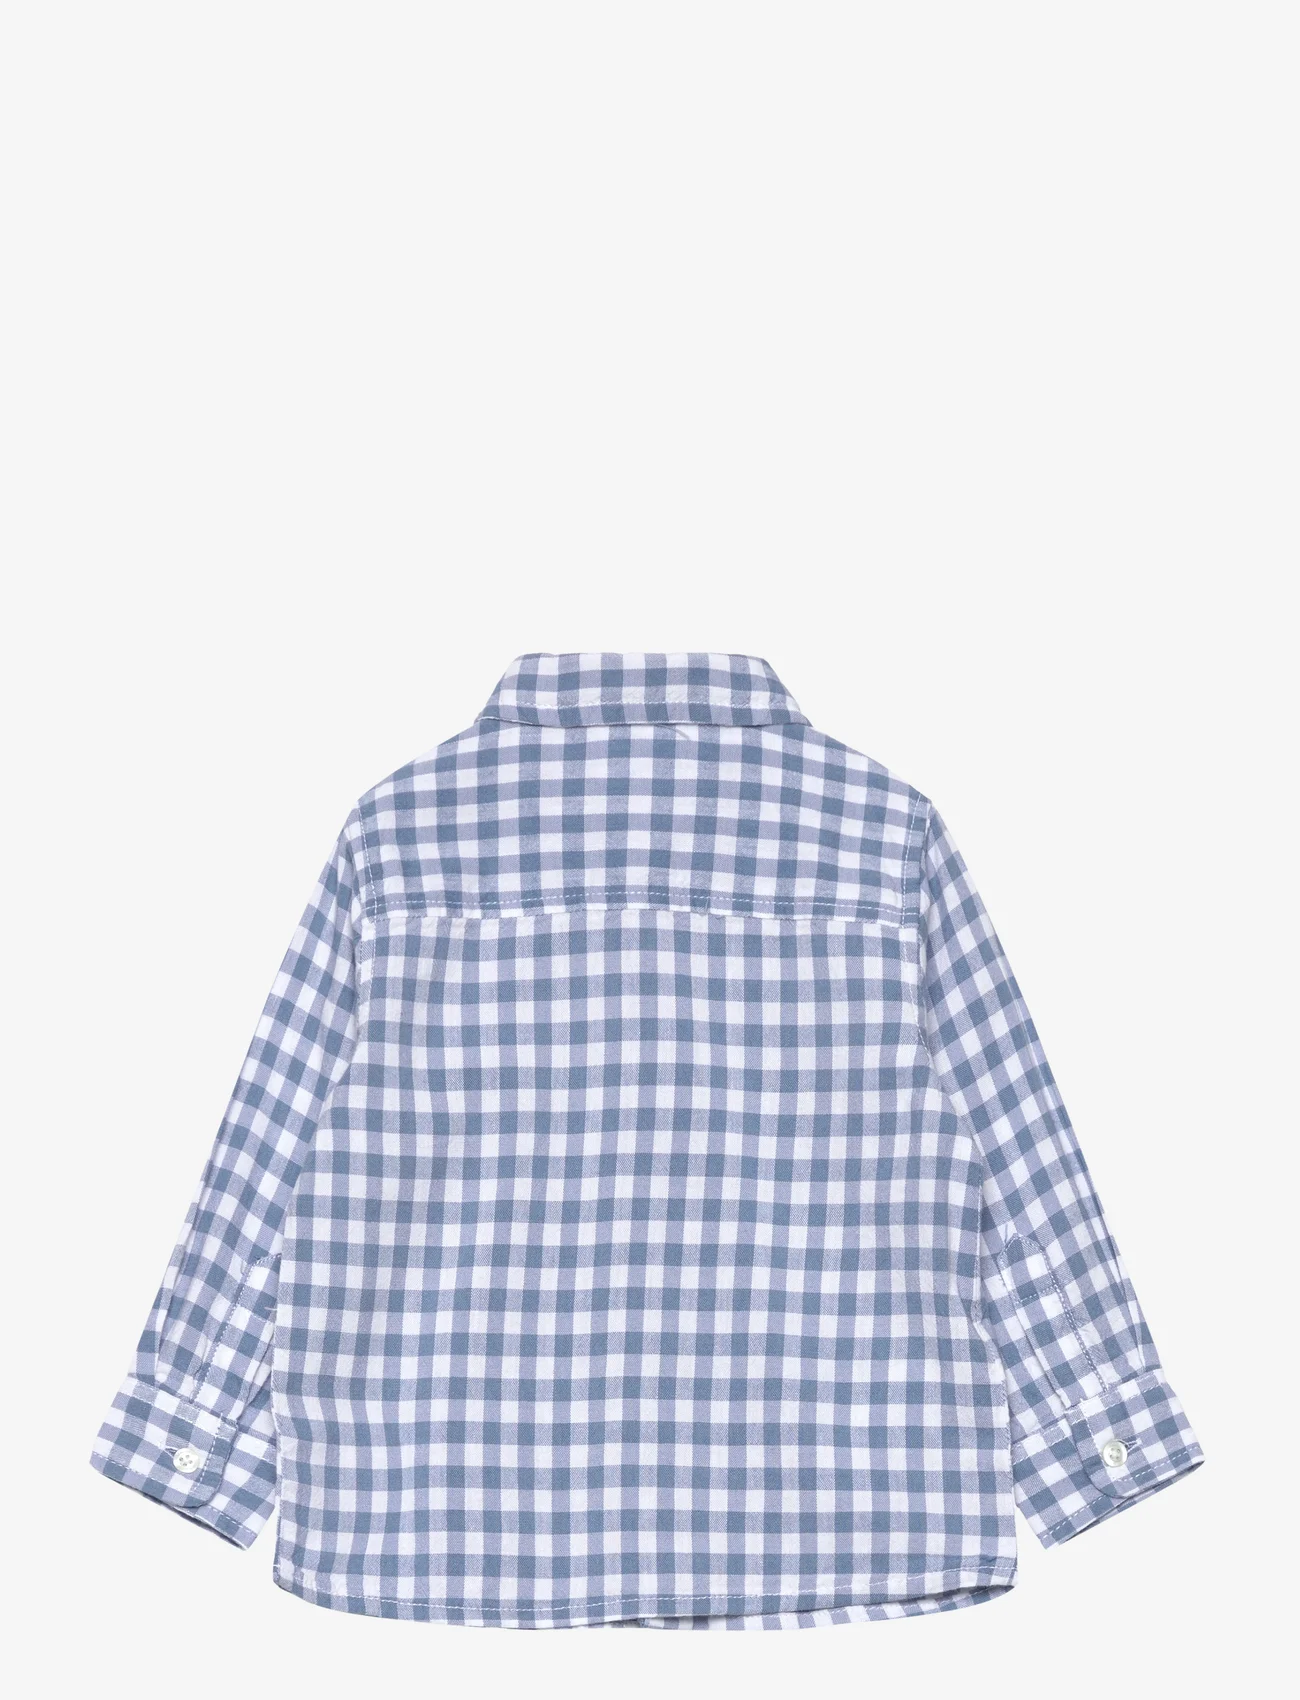 Mango - Gingham check cotton shirt - langærmede skjorter - lt-pastel blue - 1